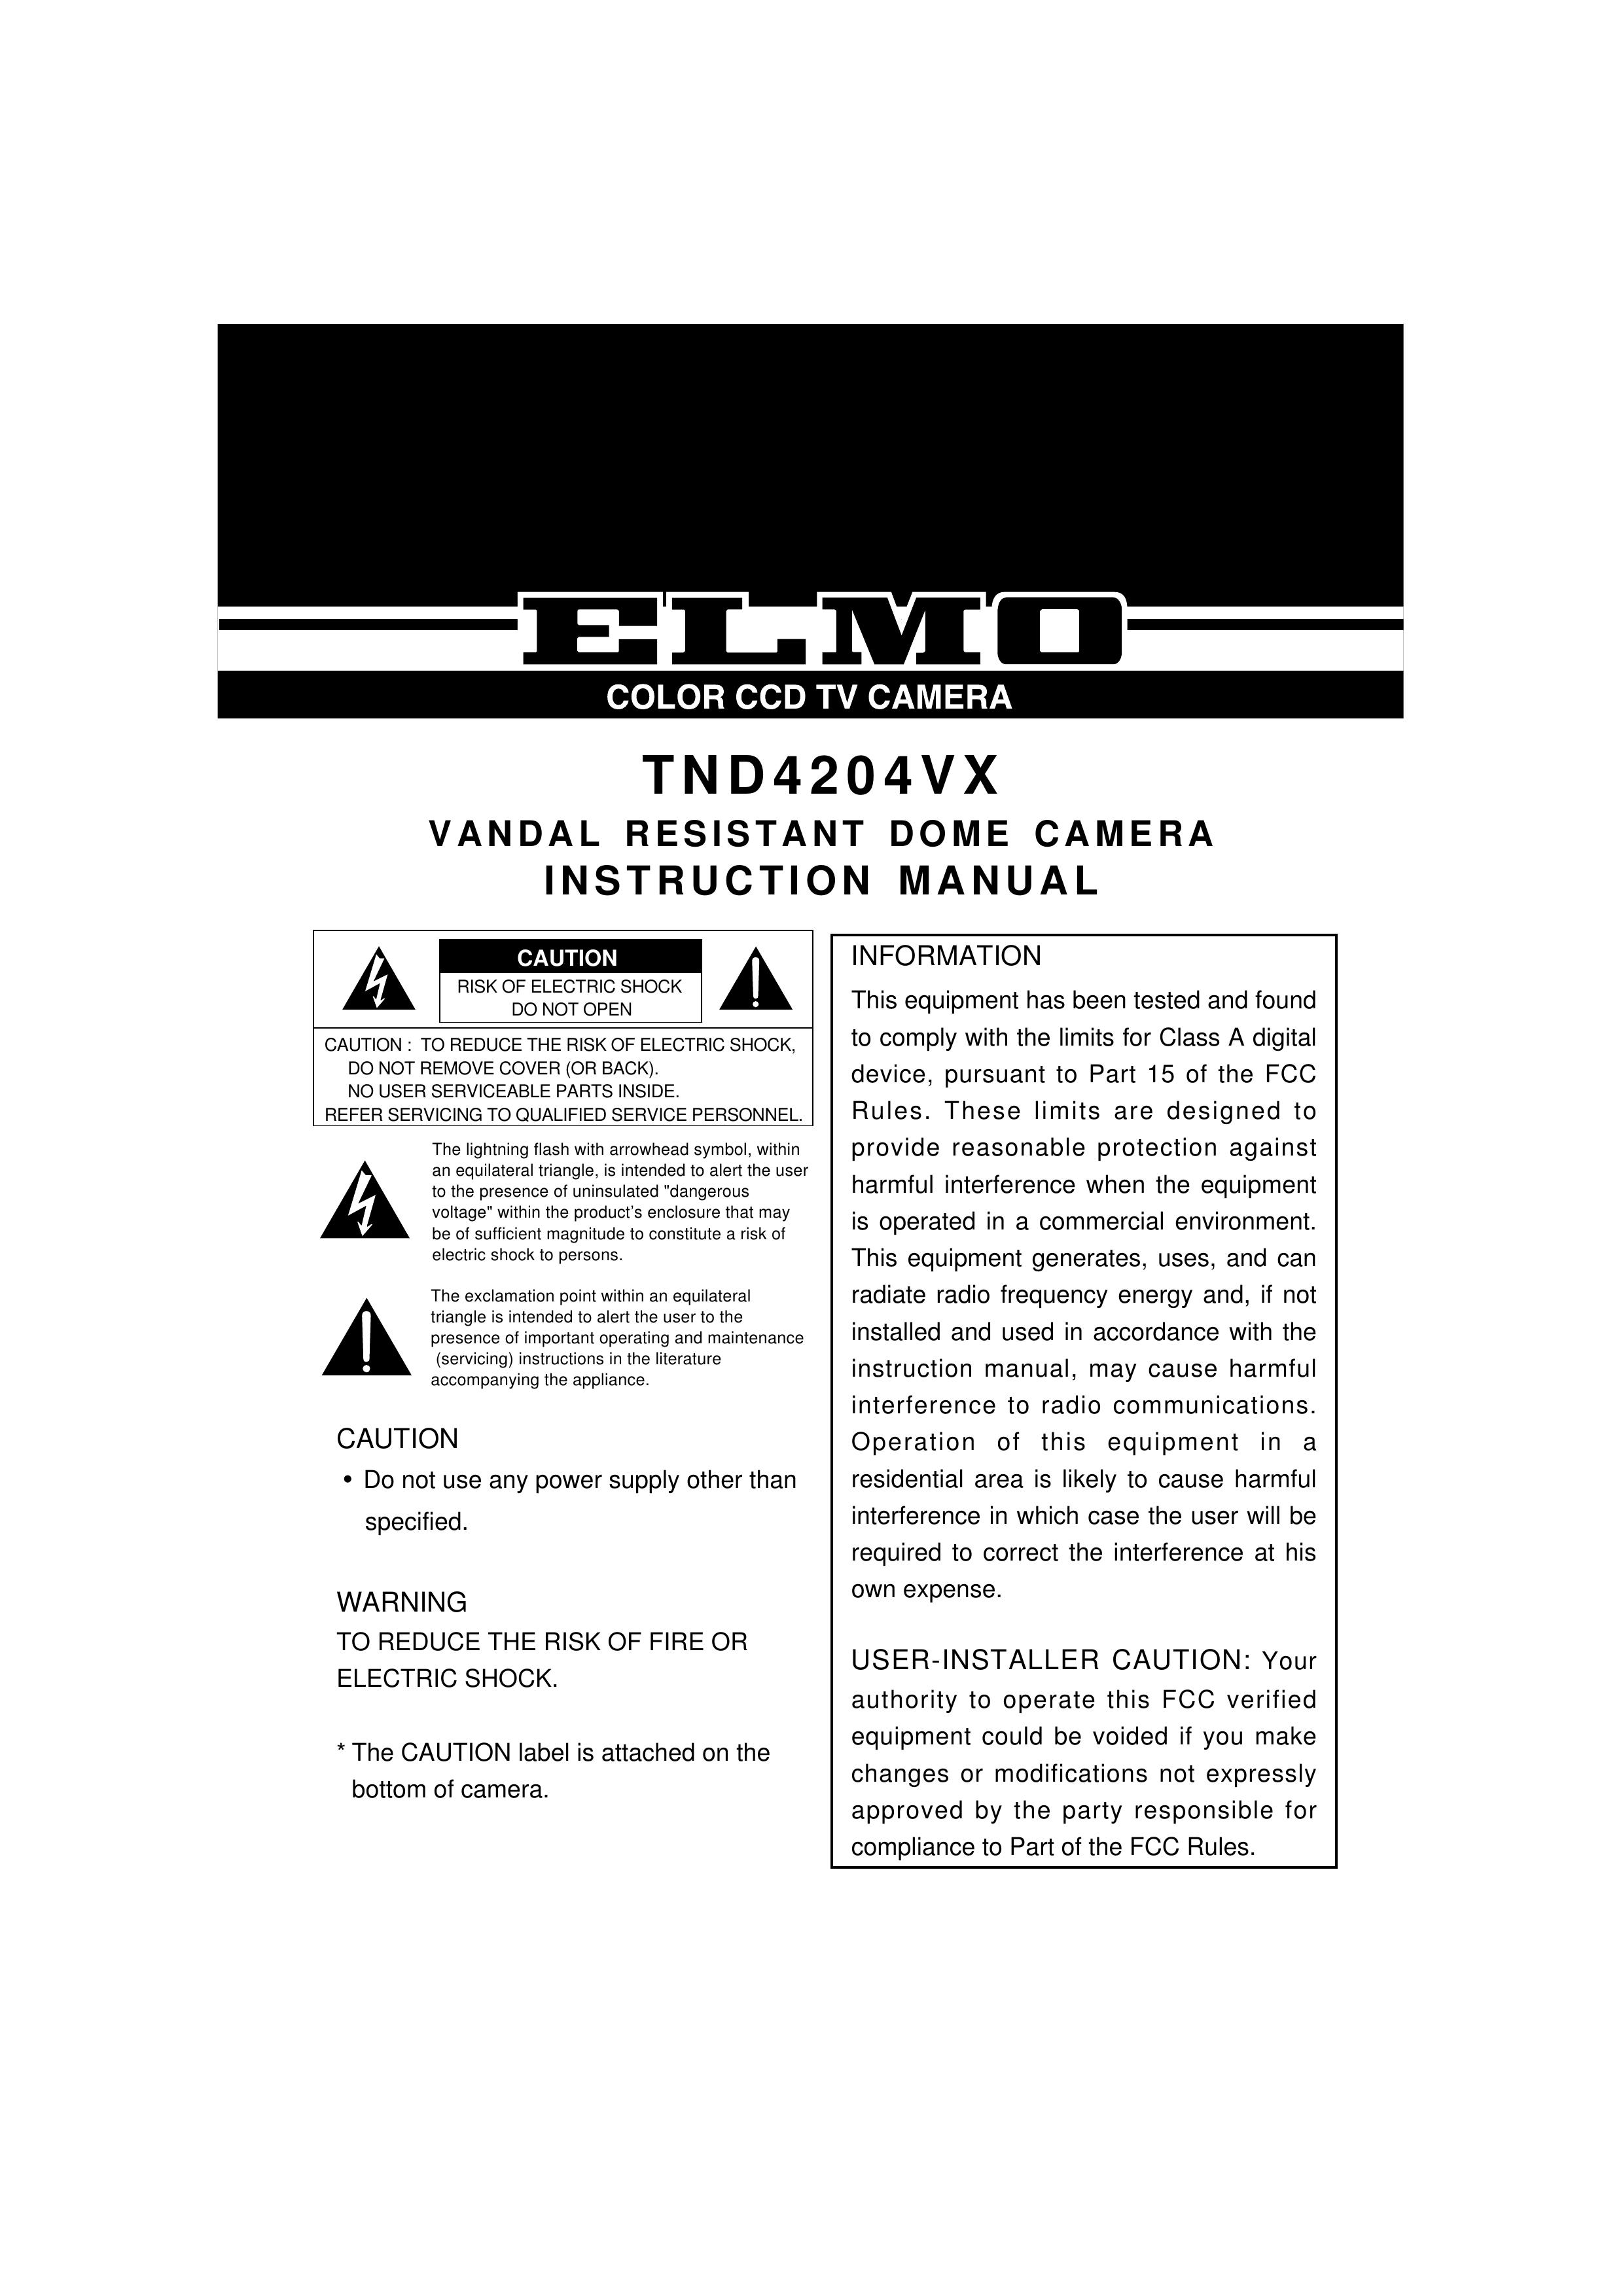 Elmo TND4204VX Security Camera User Manual